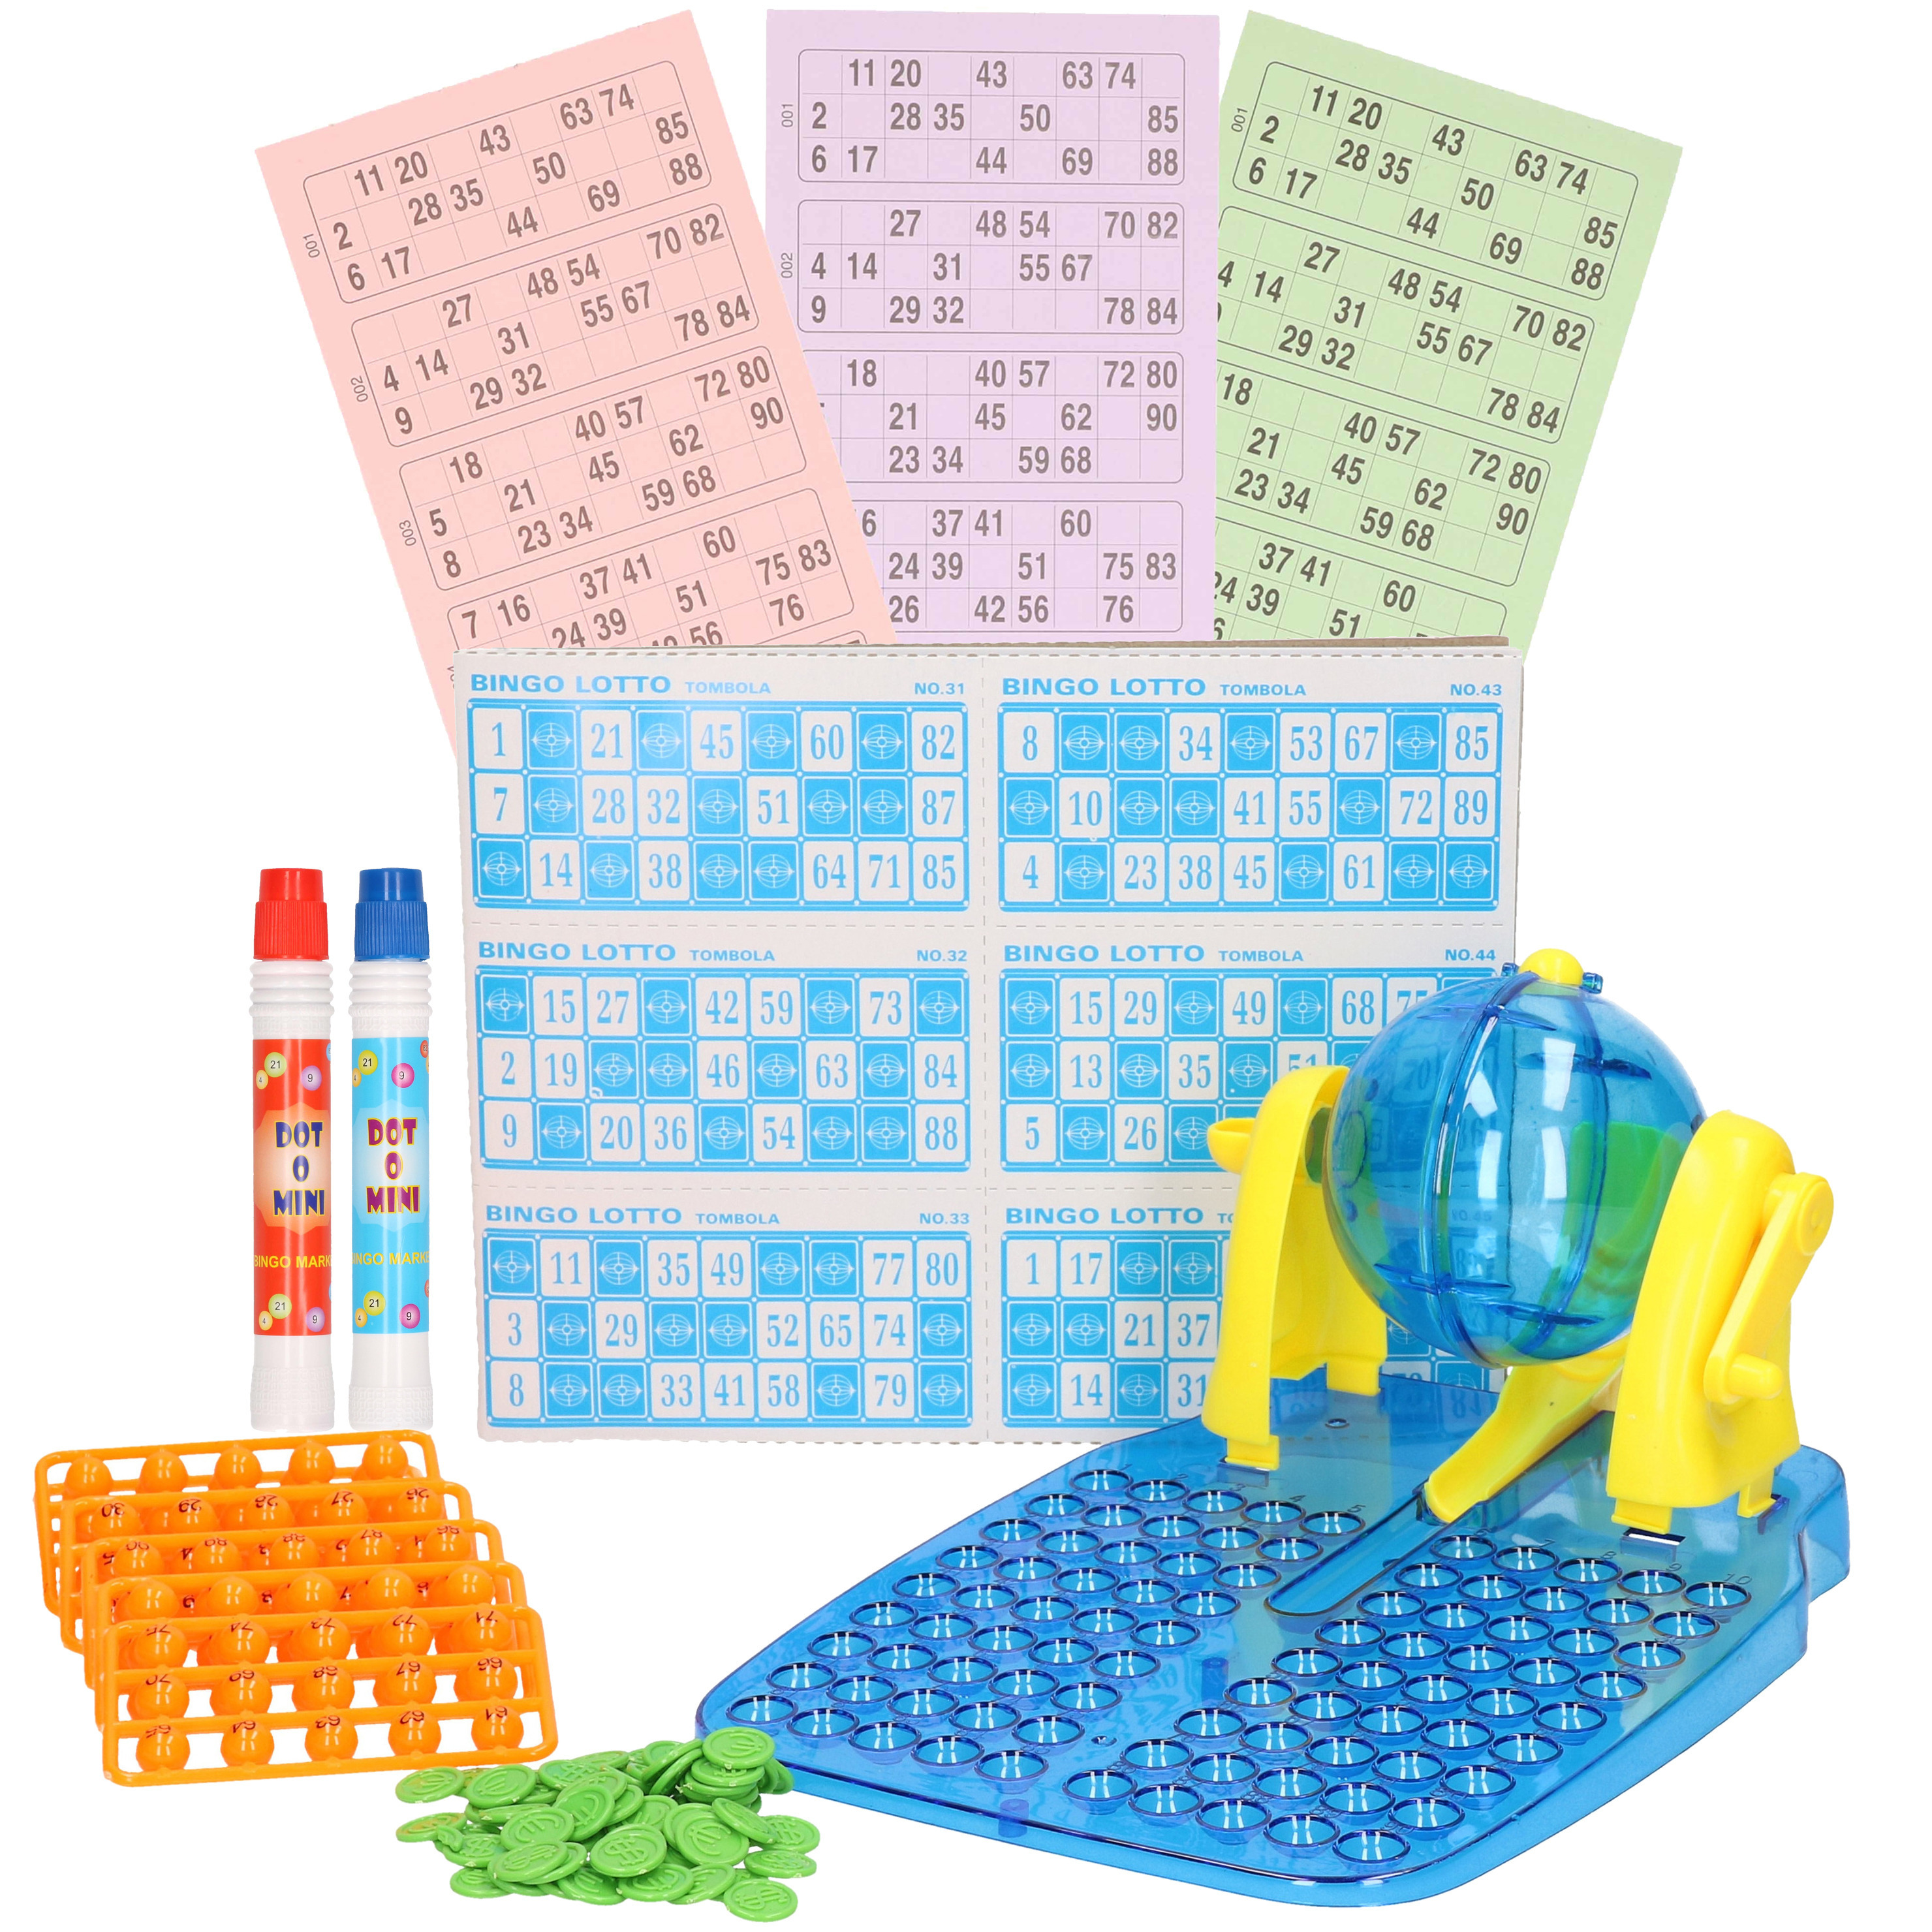 Bingo spel blauw/geel complete set nummers 1-90 met molen/148x bingokaarten/2x stiften